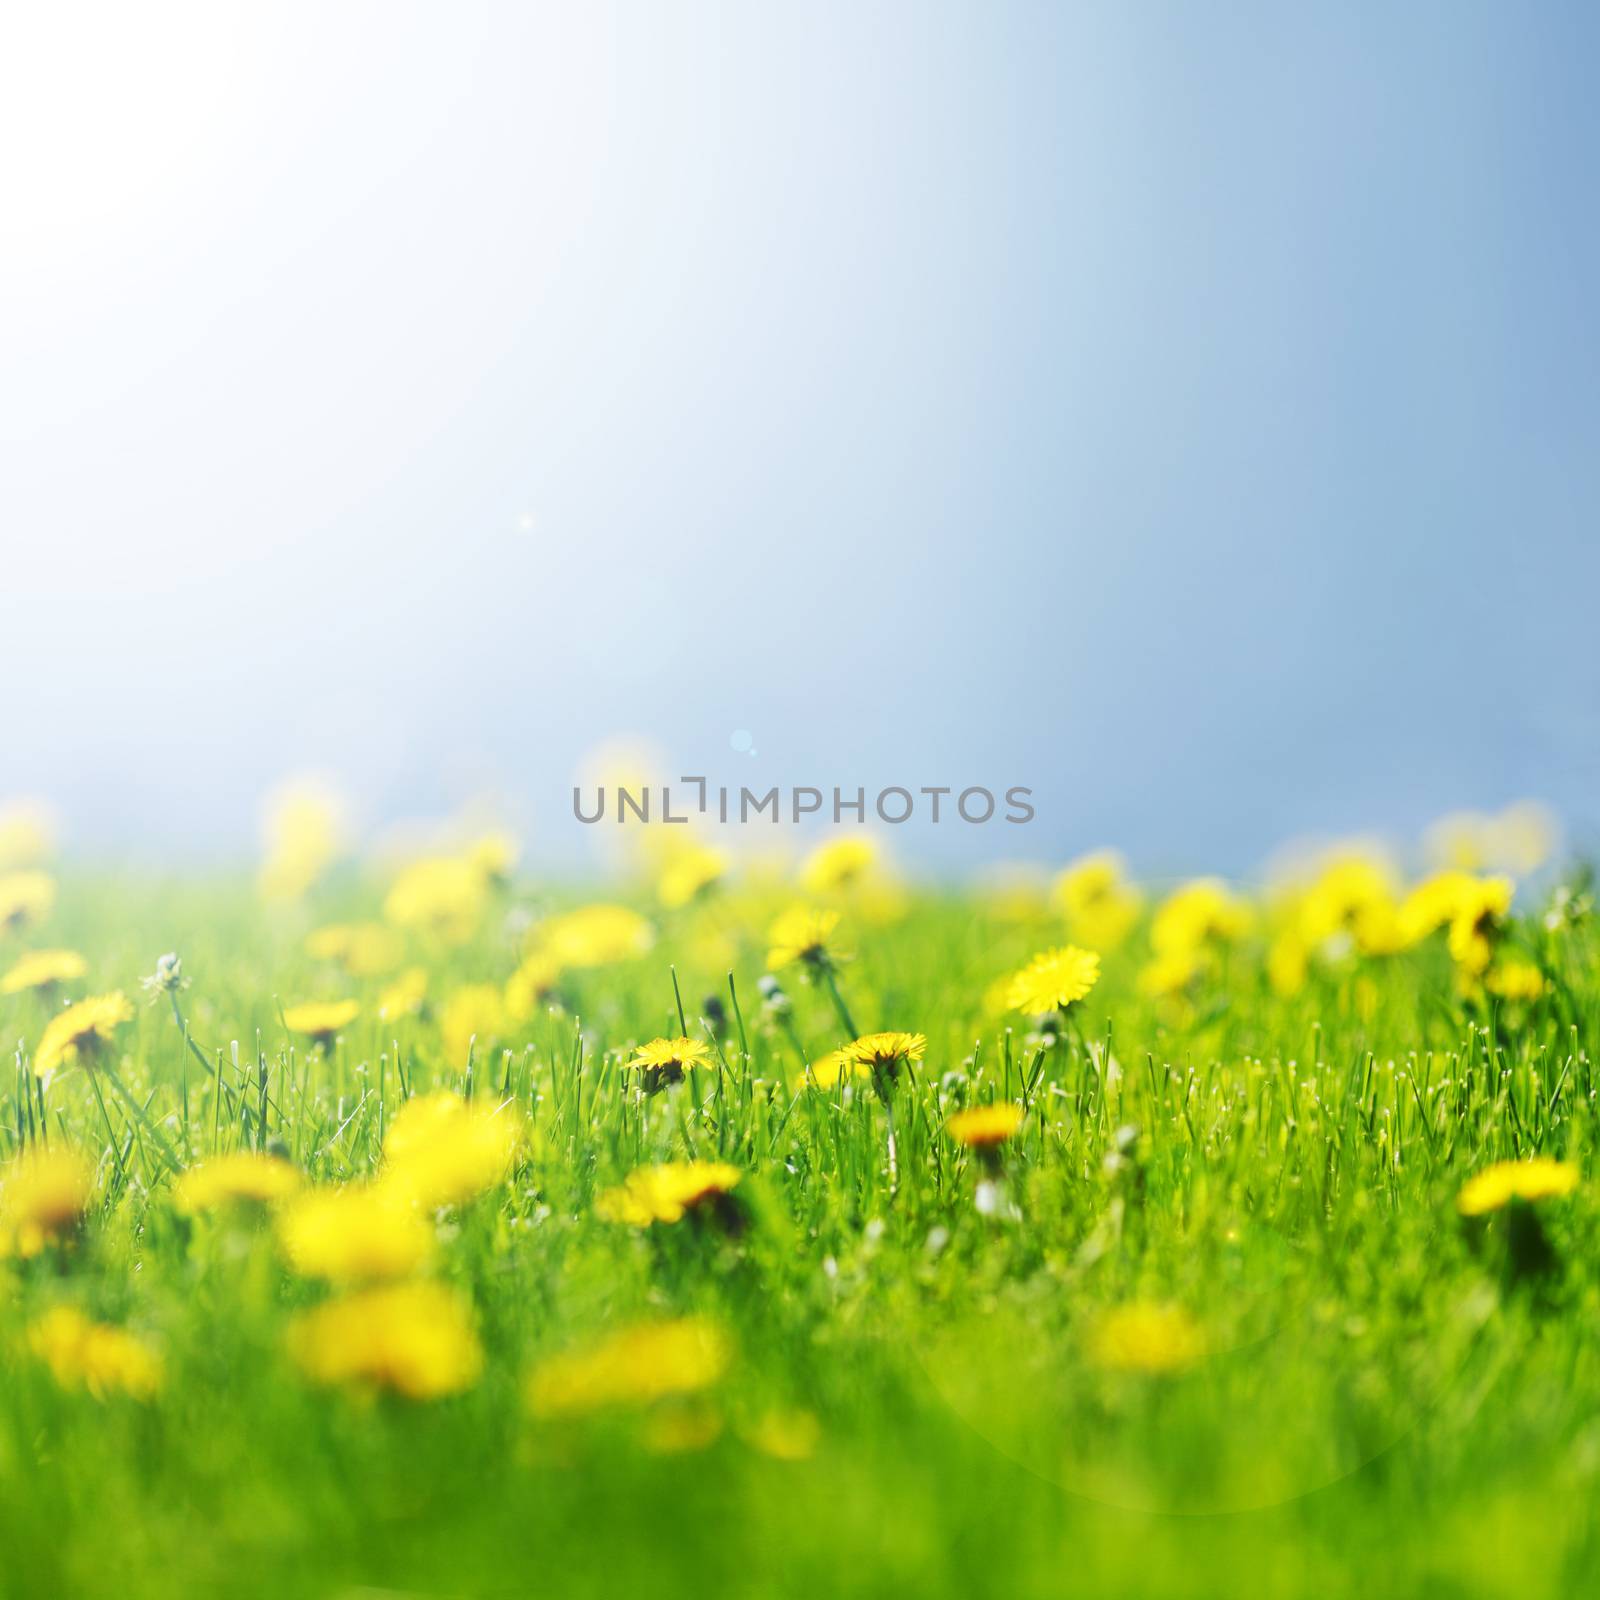 Beautiful yellow dandelion flowers on field